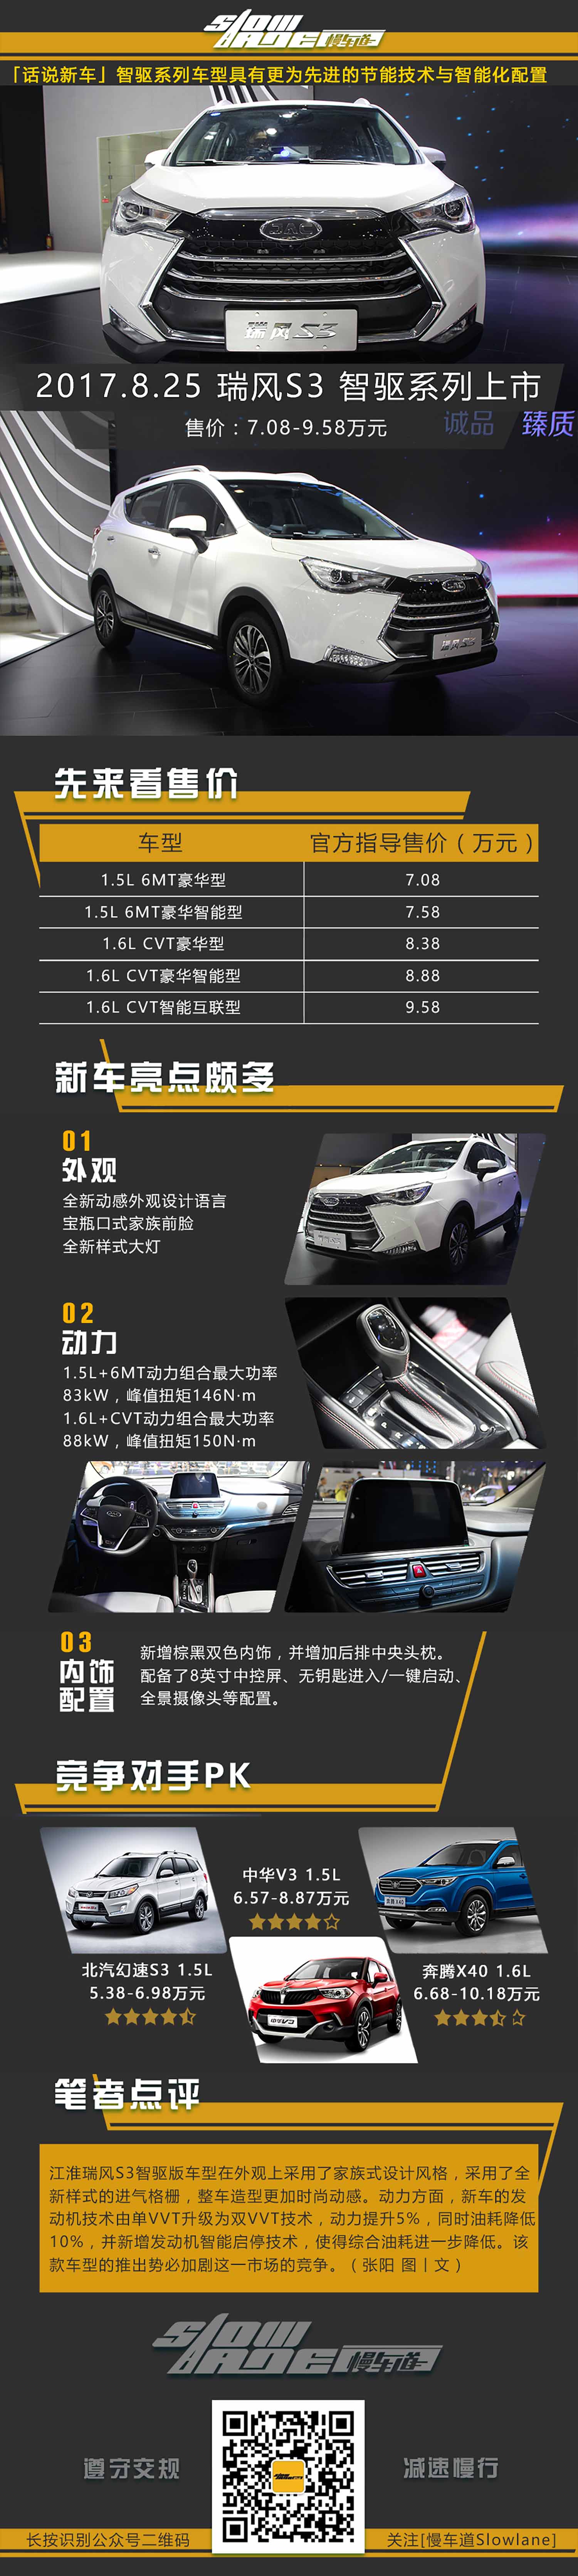 全面升级 江淮瑞风S2/S3智驱系列正式上市